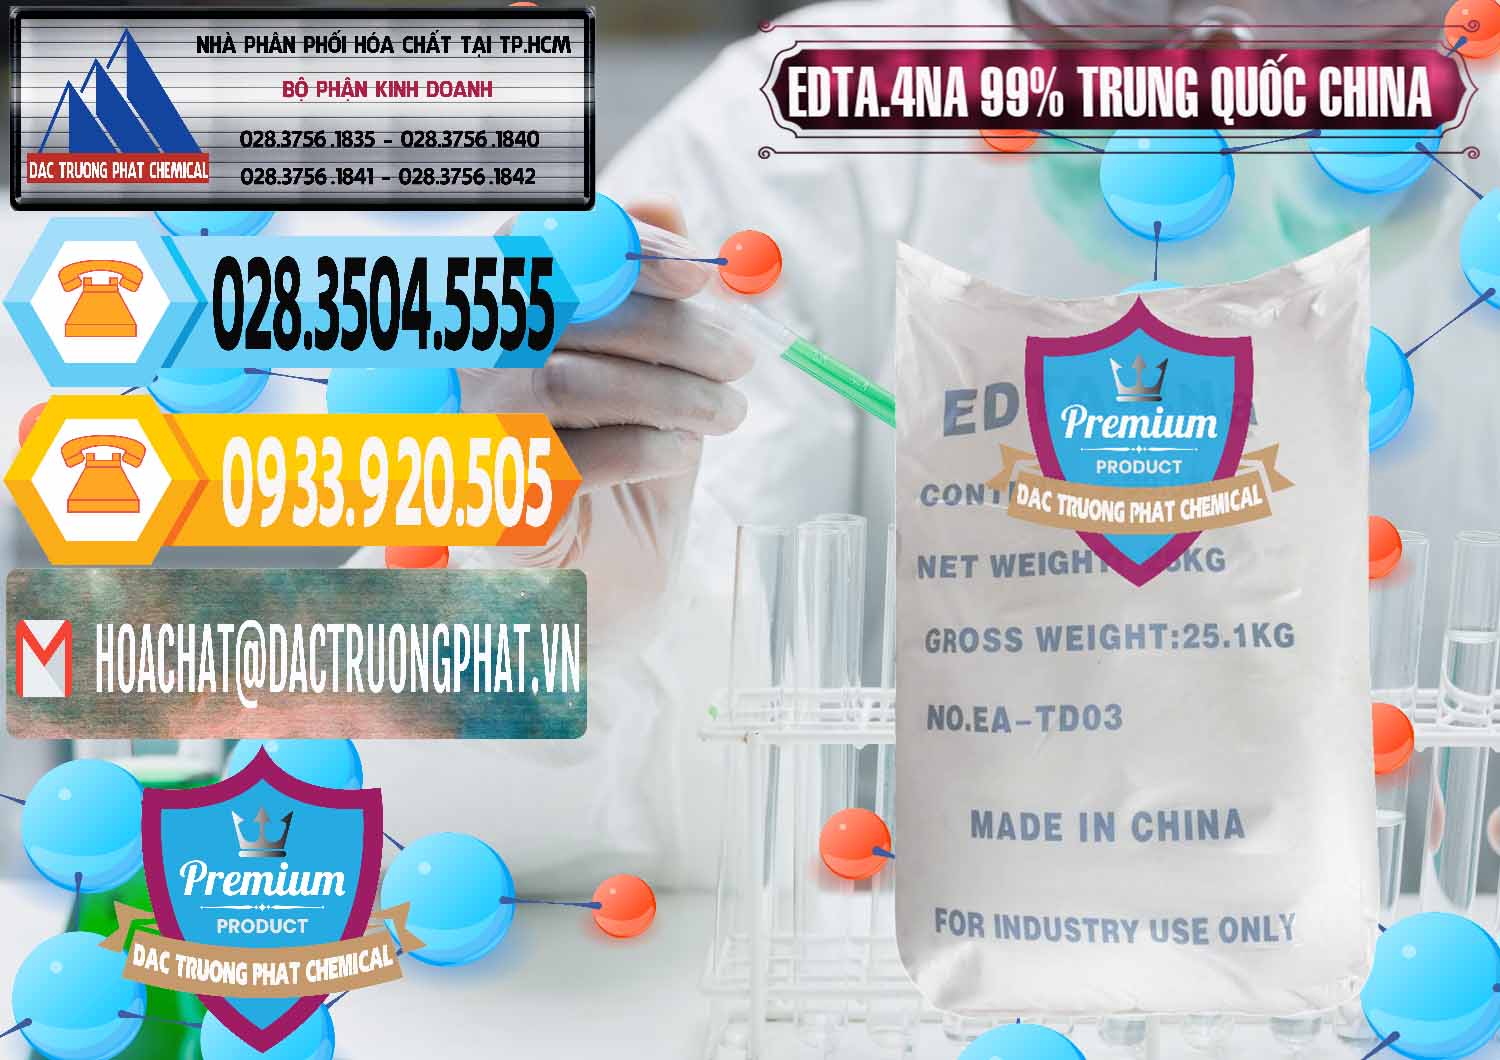 Nơi phân phối _ bán EDTA.4NA - EDTA Muối 99% Trung Quốc China - 0292 - Nơi chuyên nhập khẩu _ phân phối hóa chất tại TP.HCM - hoachattayrua.net